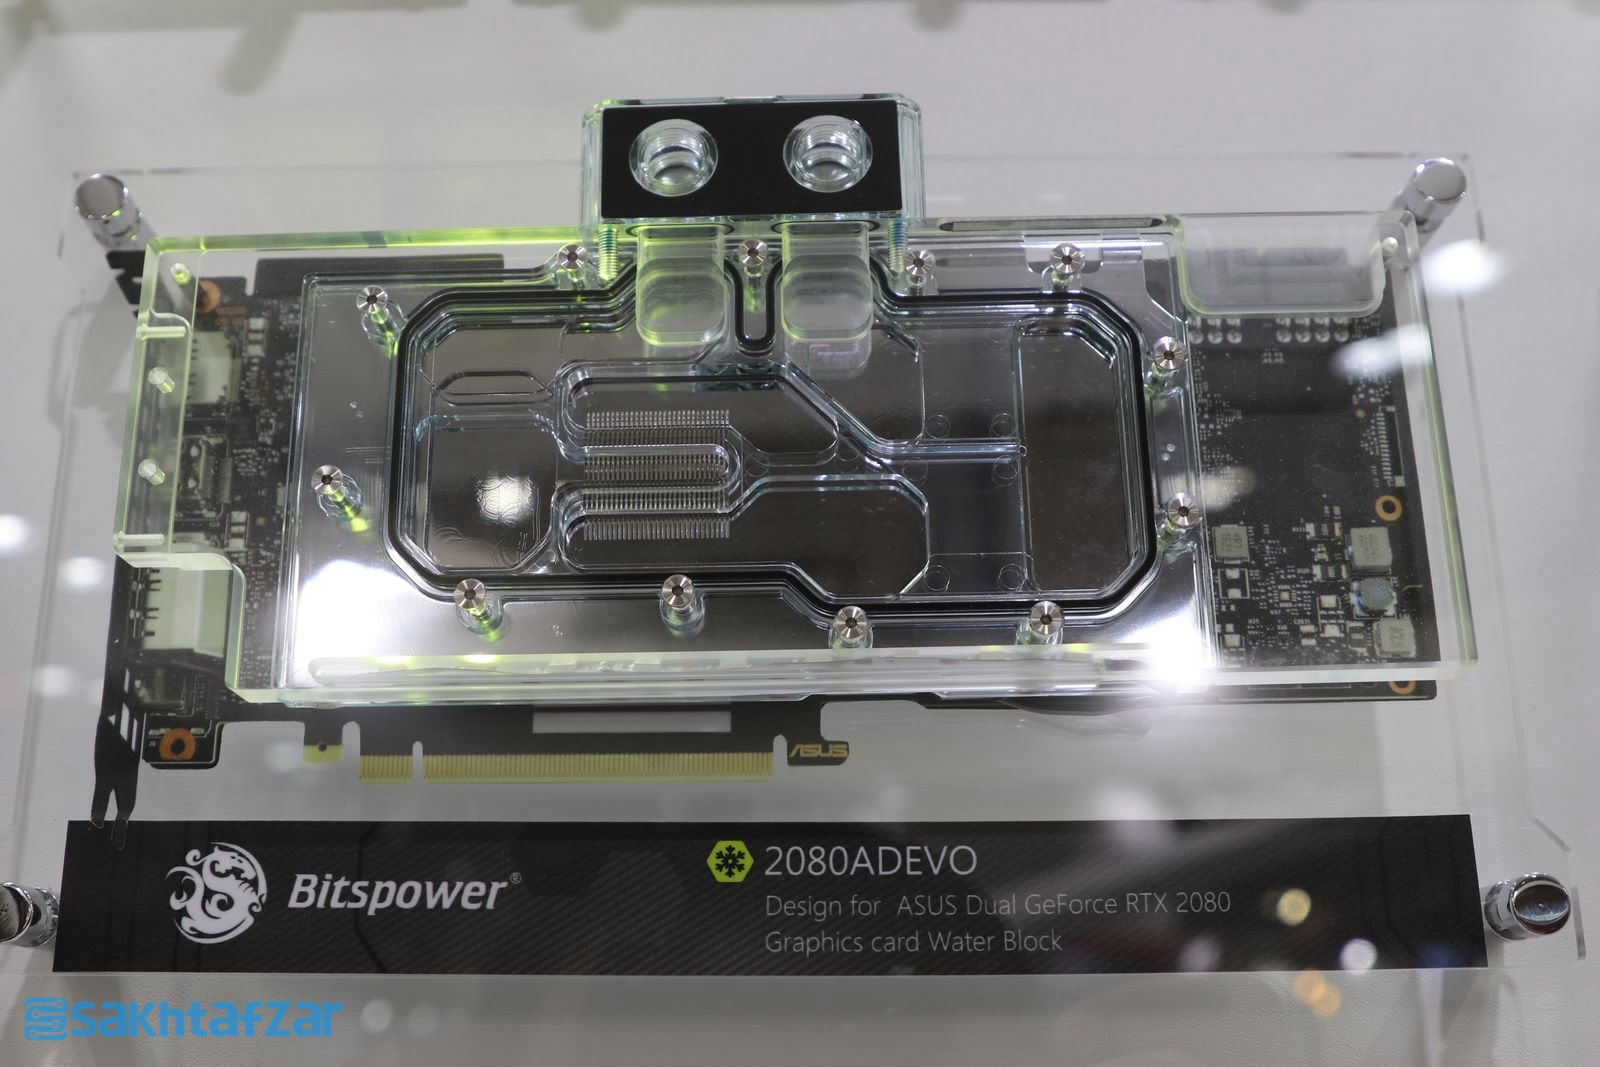 اختصاصی؛ گزارش تصویری از سیستم‌های مود شده و زیبای Bitspower در کامپیوتکس 2019